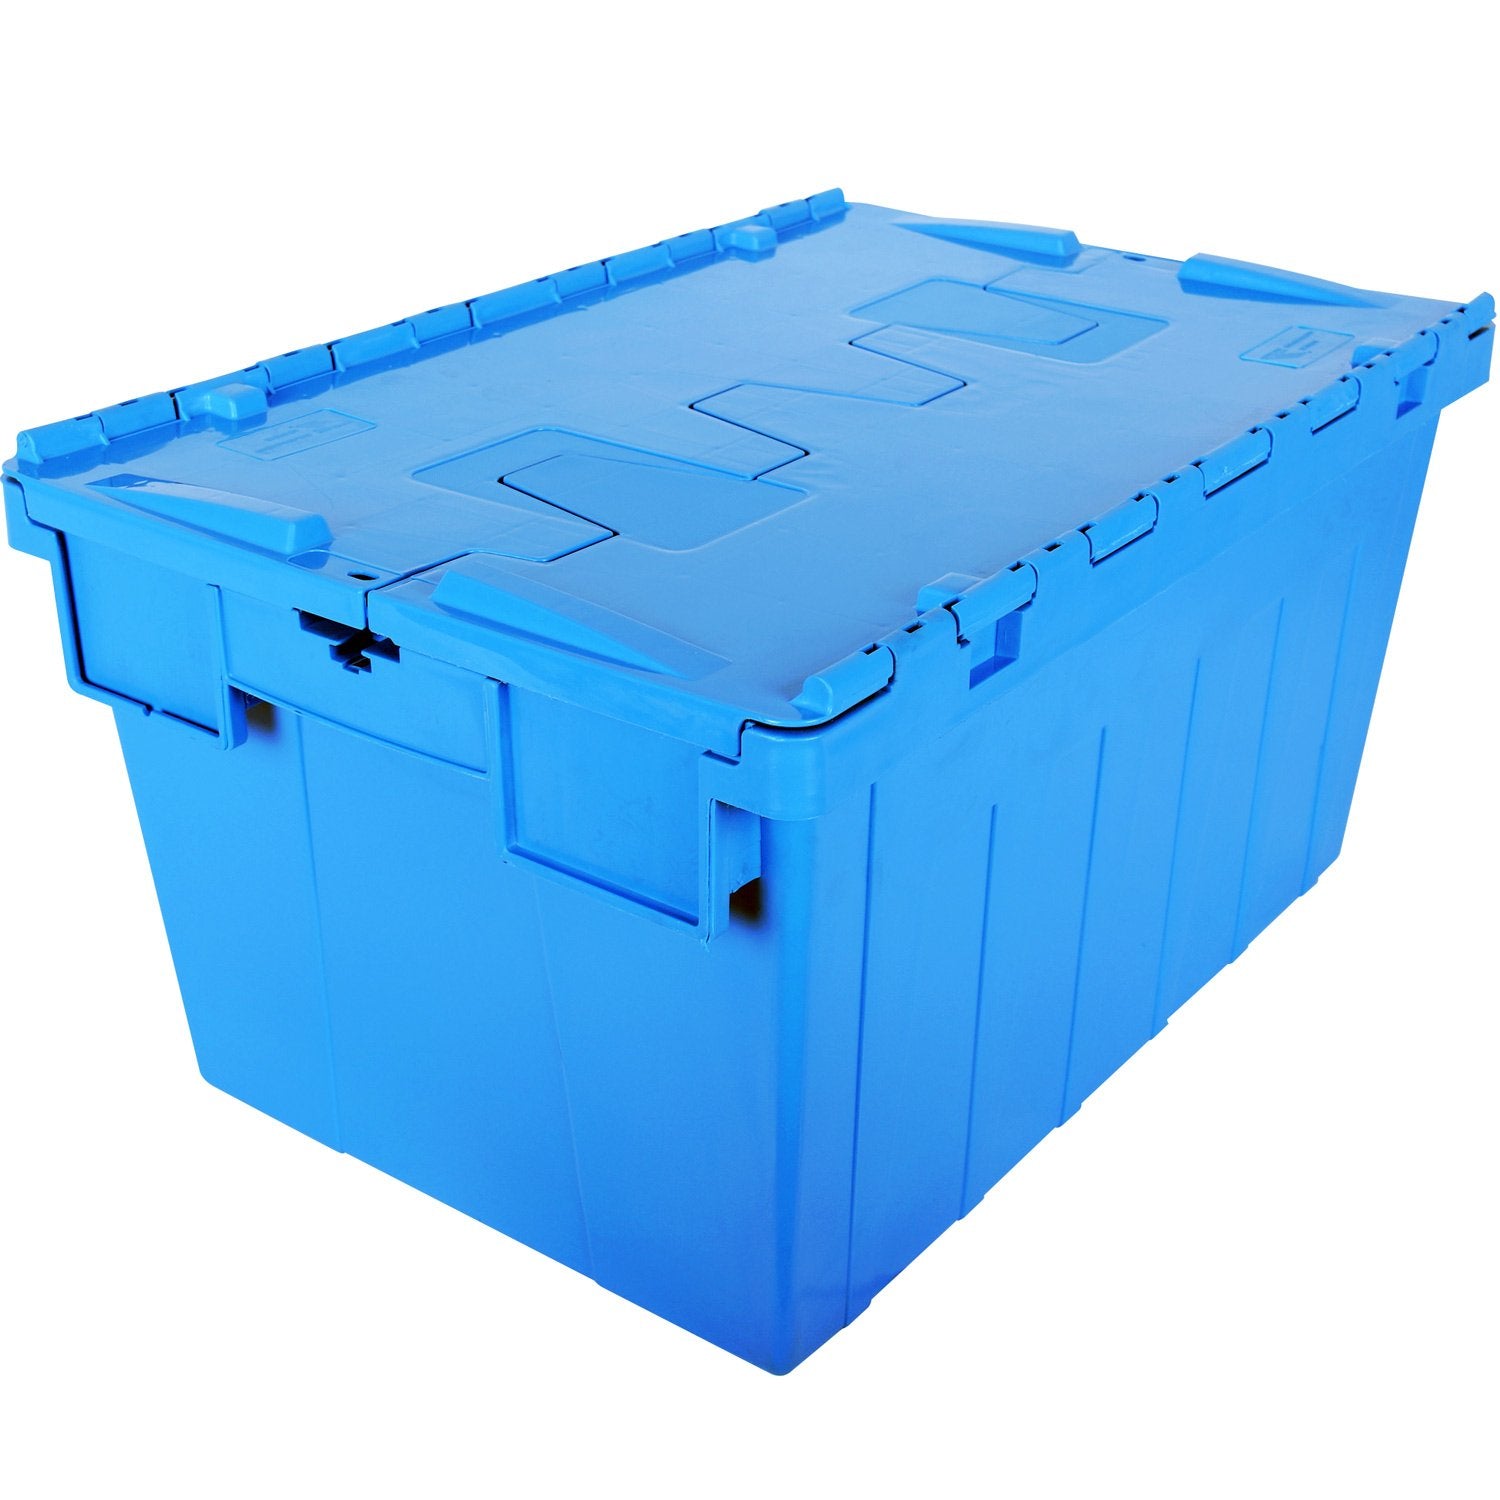 Cajas plásticas - Almacenaje y logística - Cajas plásticas